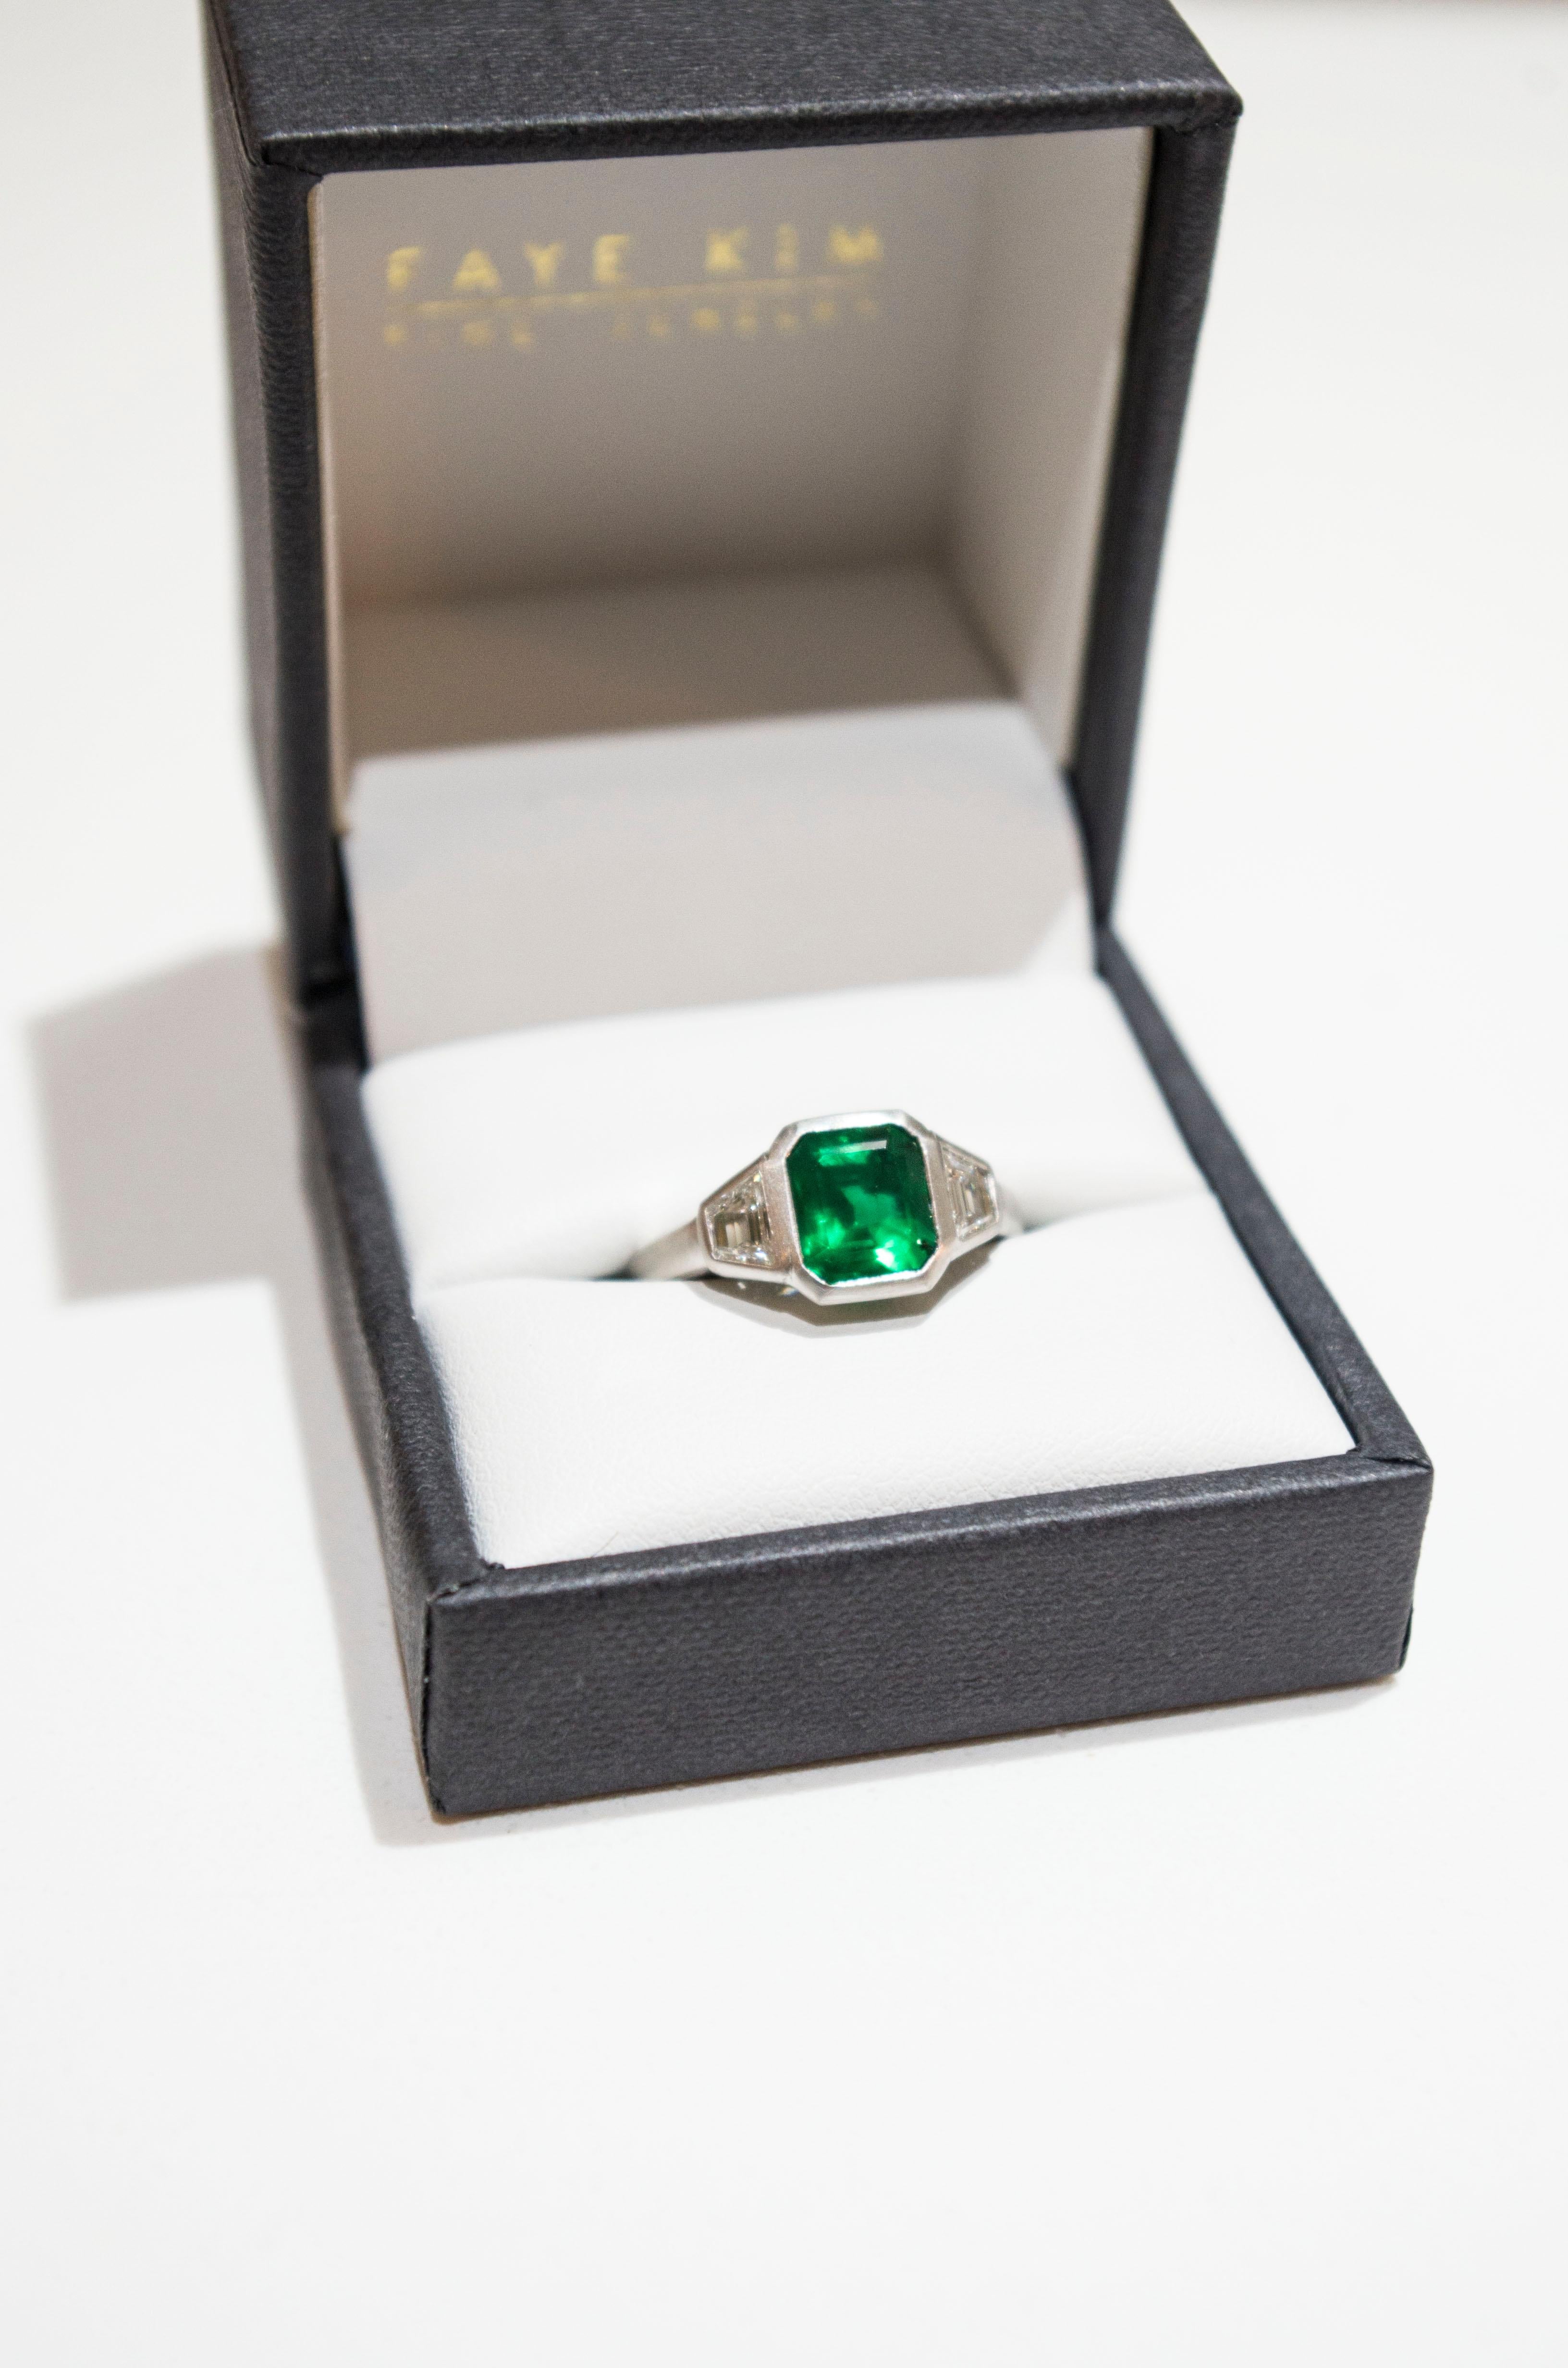 Women's Faye Kim Platinum Emerald and Diamond Ring